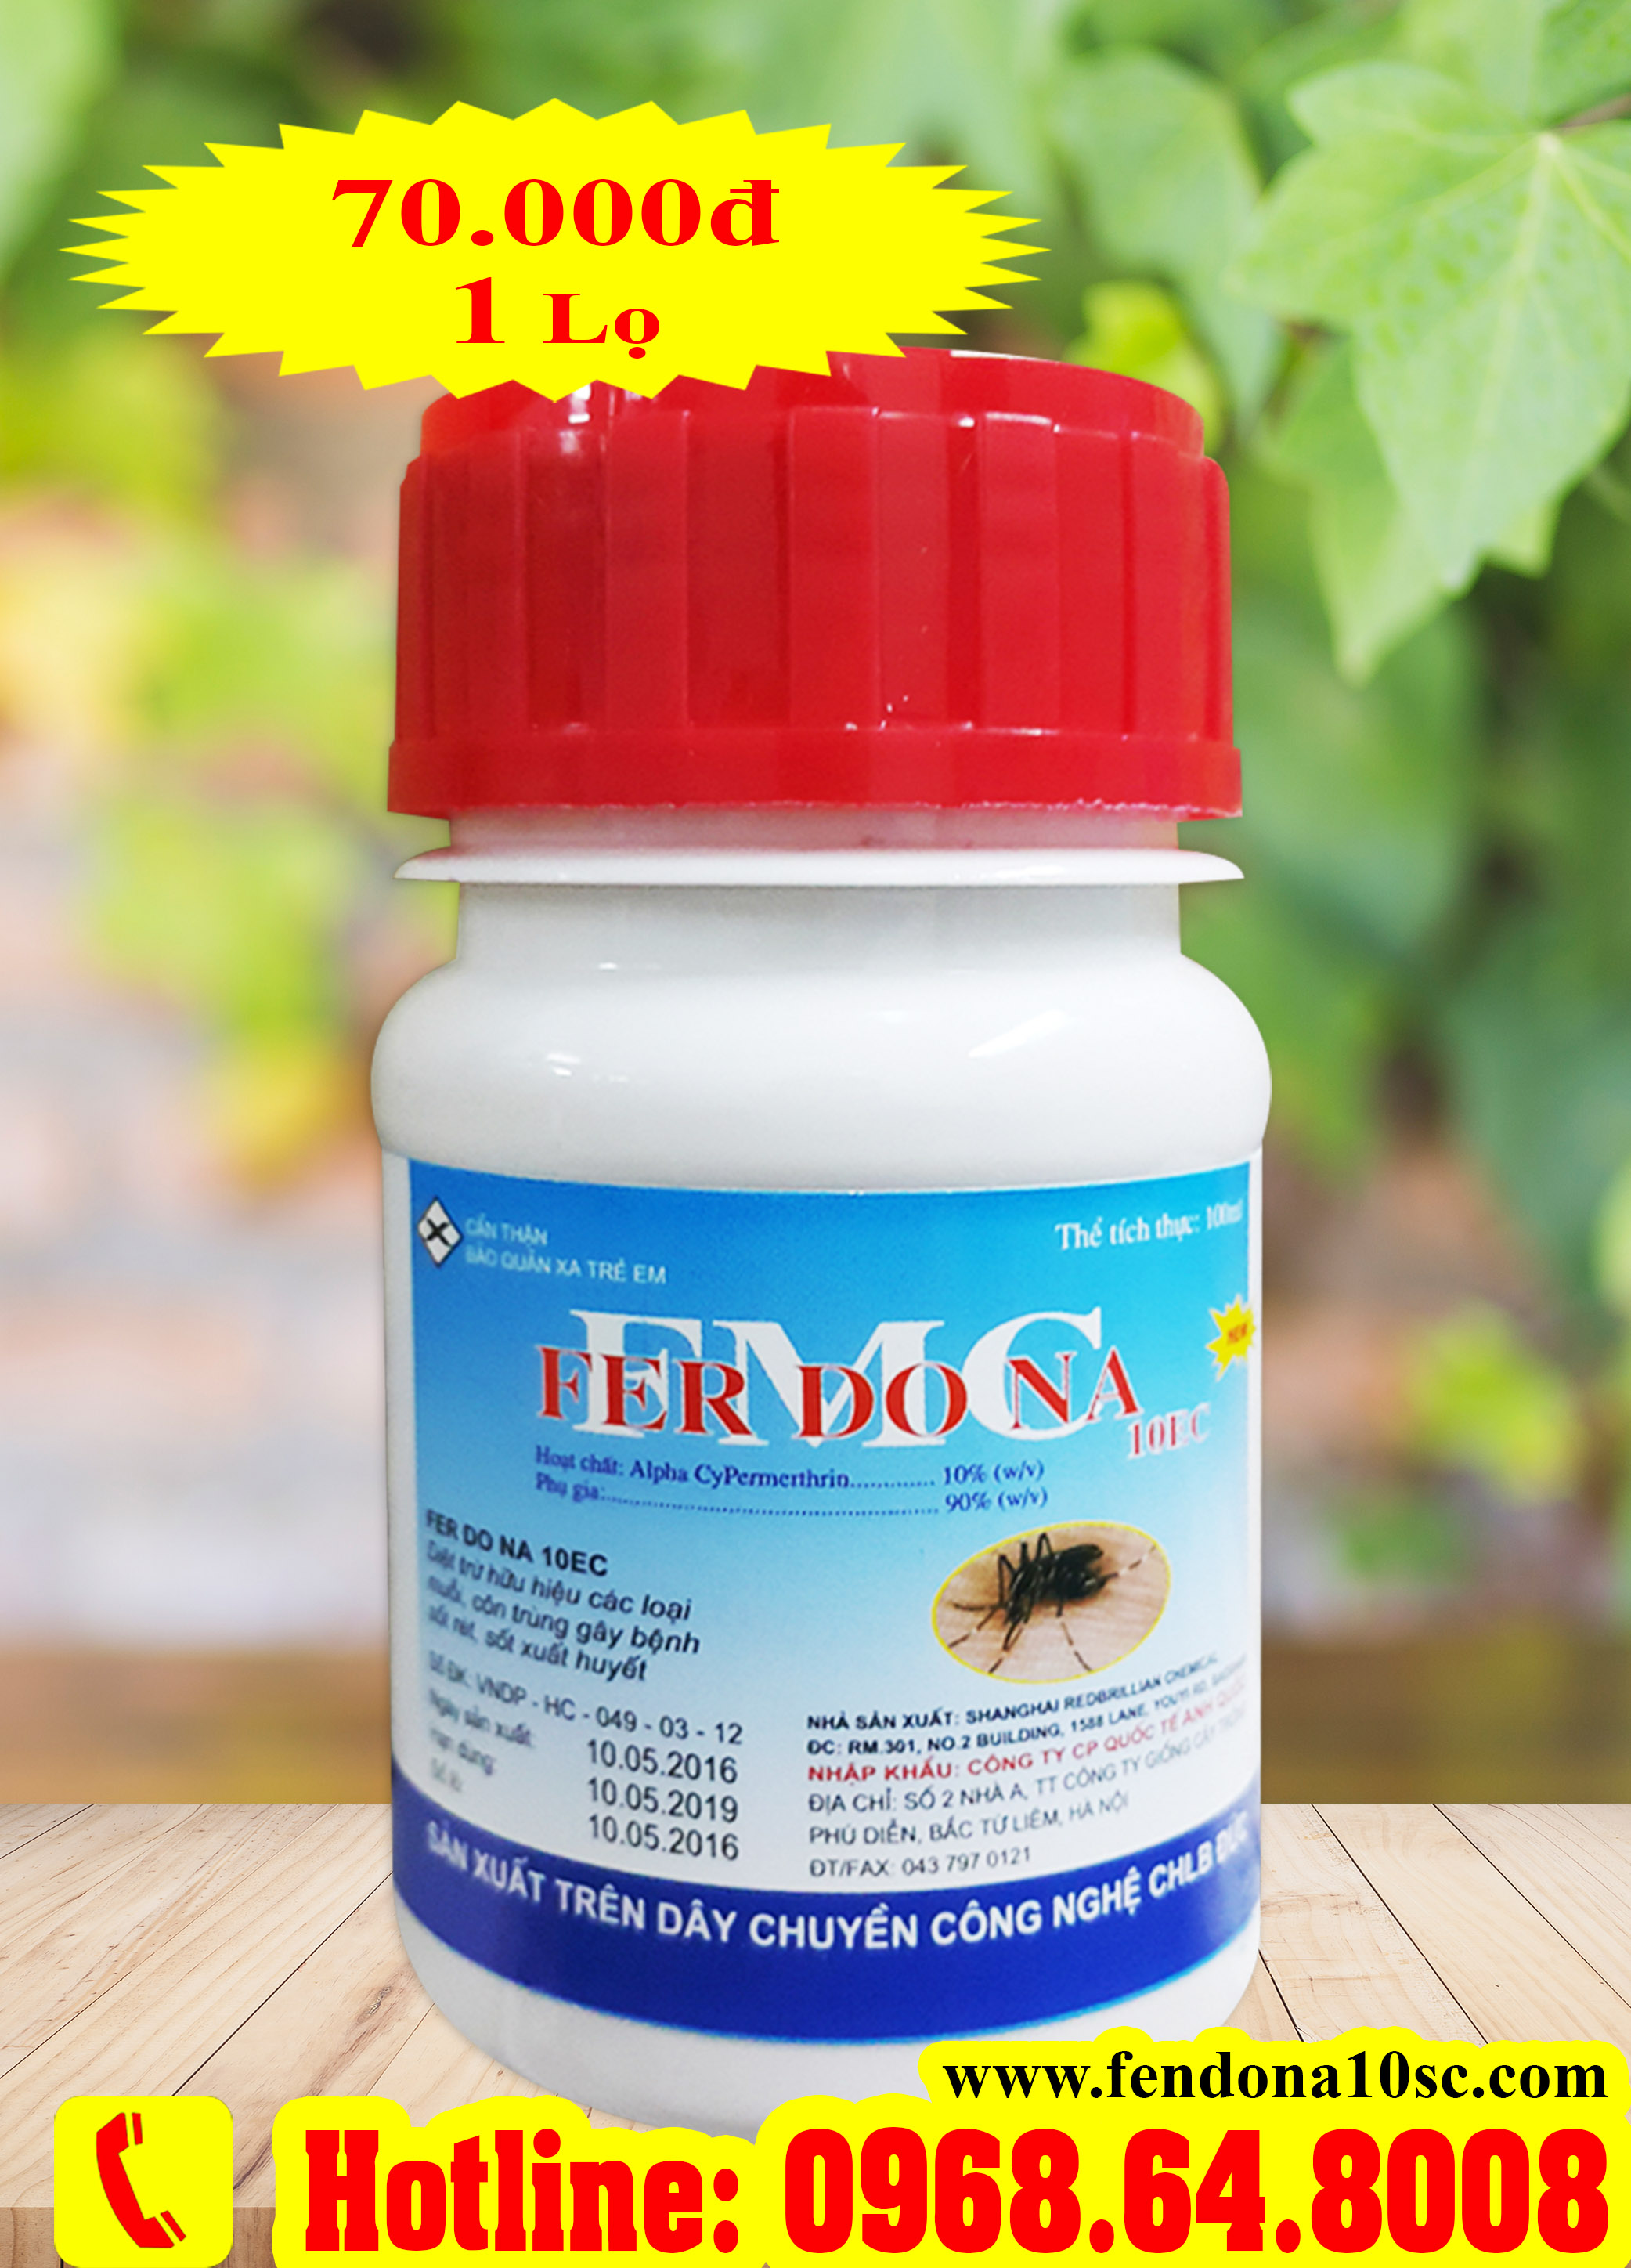 Ferdona FMC 10EC (100ml) - (Hàng của CHLB Đức) - Thuốc diệt côn trùng, muỗi, gián, ruồi, kiến, bọ chét...